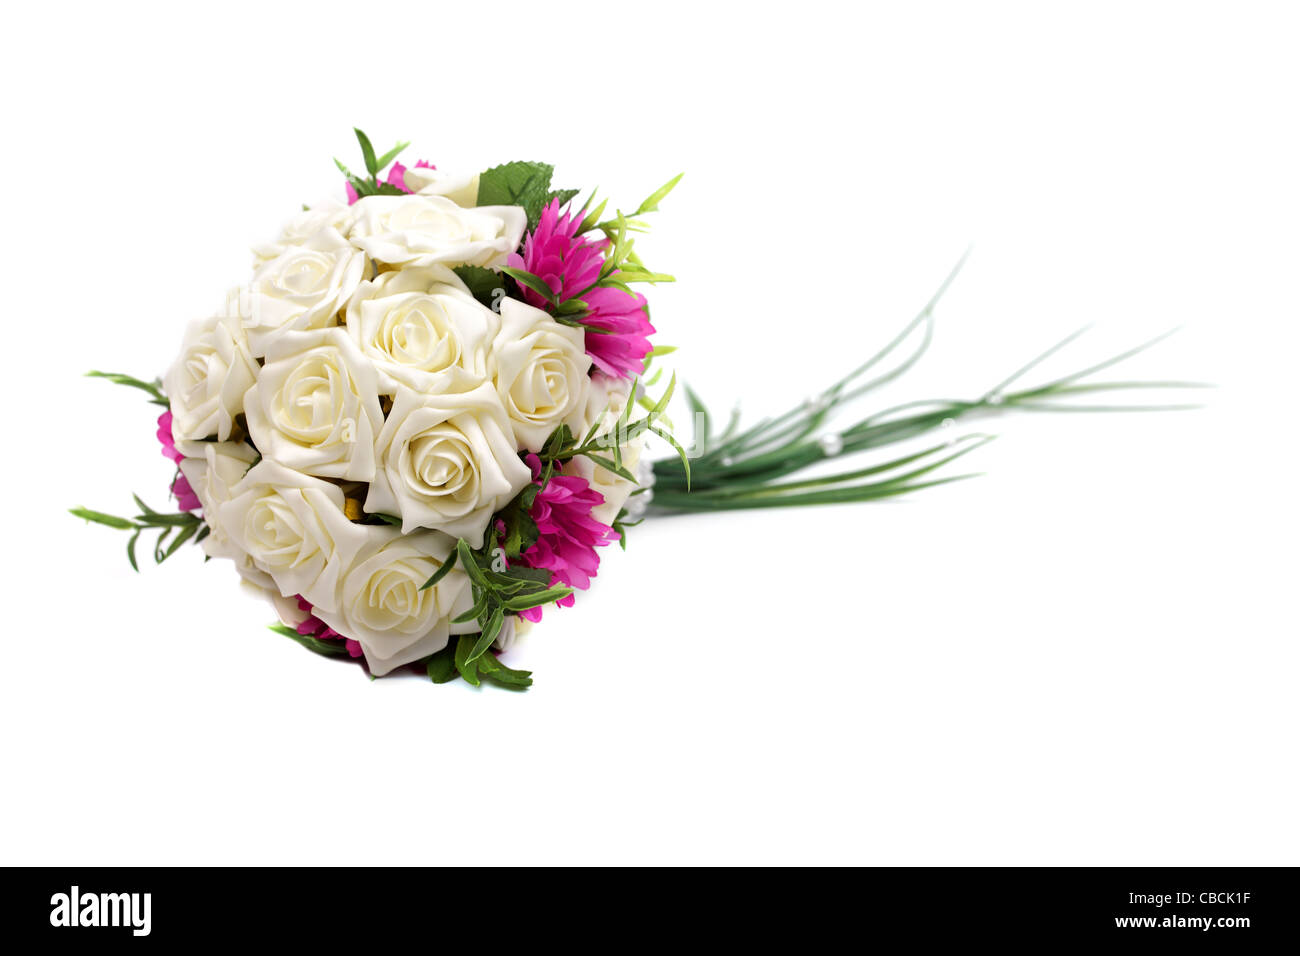 Wedding bouquet isolated on white background, studio shot. Stock Photo